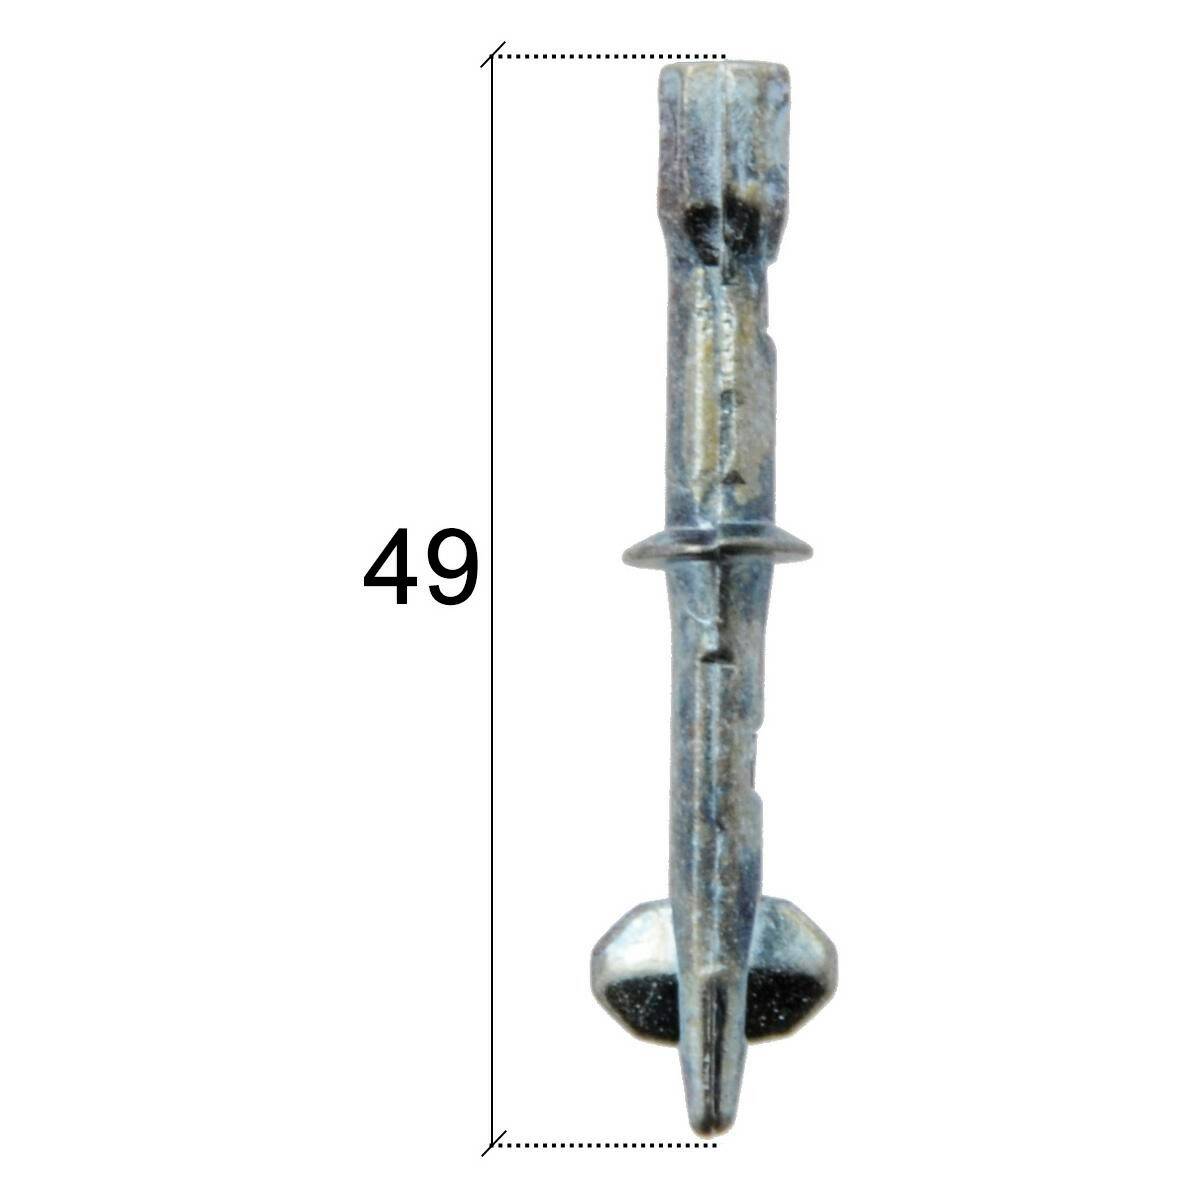 Lock repair kit Mercedes - 49mm